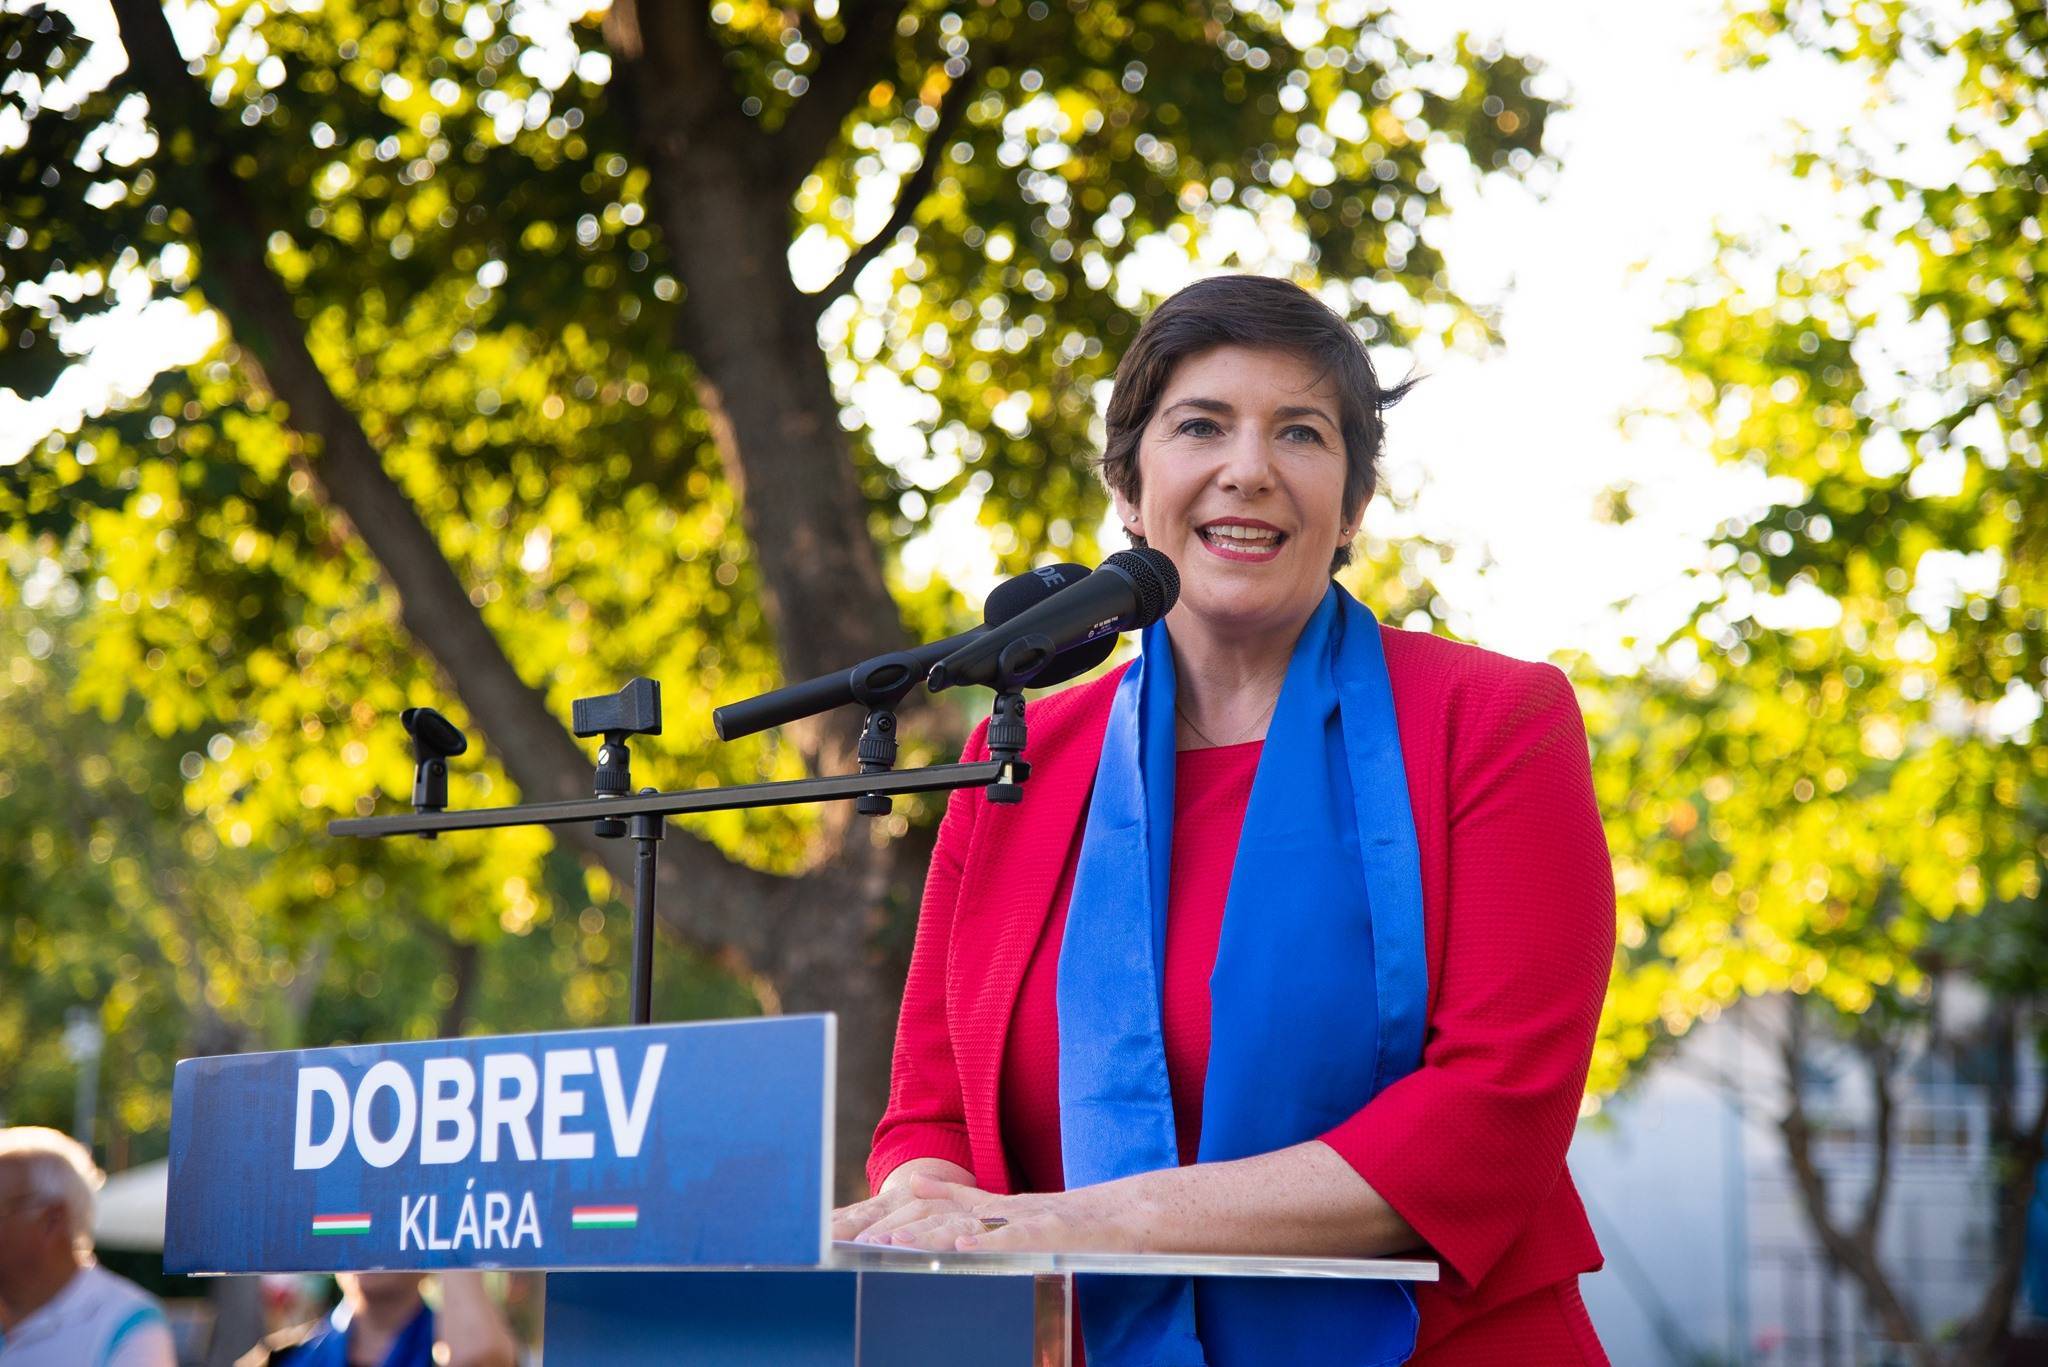 Cine este Klára Dobrev? Femeia cu care s-ar putea ,,duela” Viktor Orban pentru funcția de premier a Ungariei